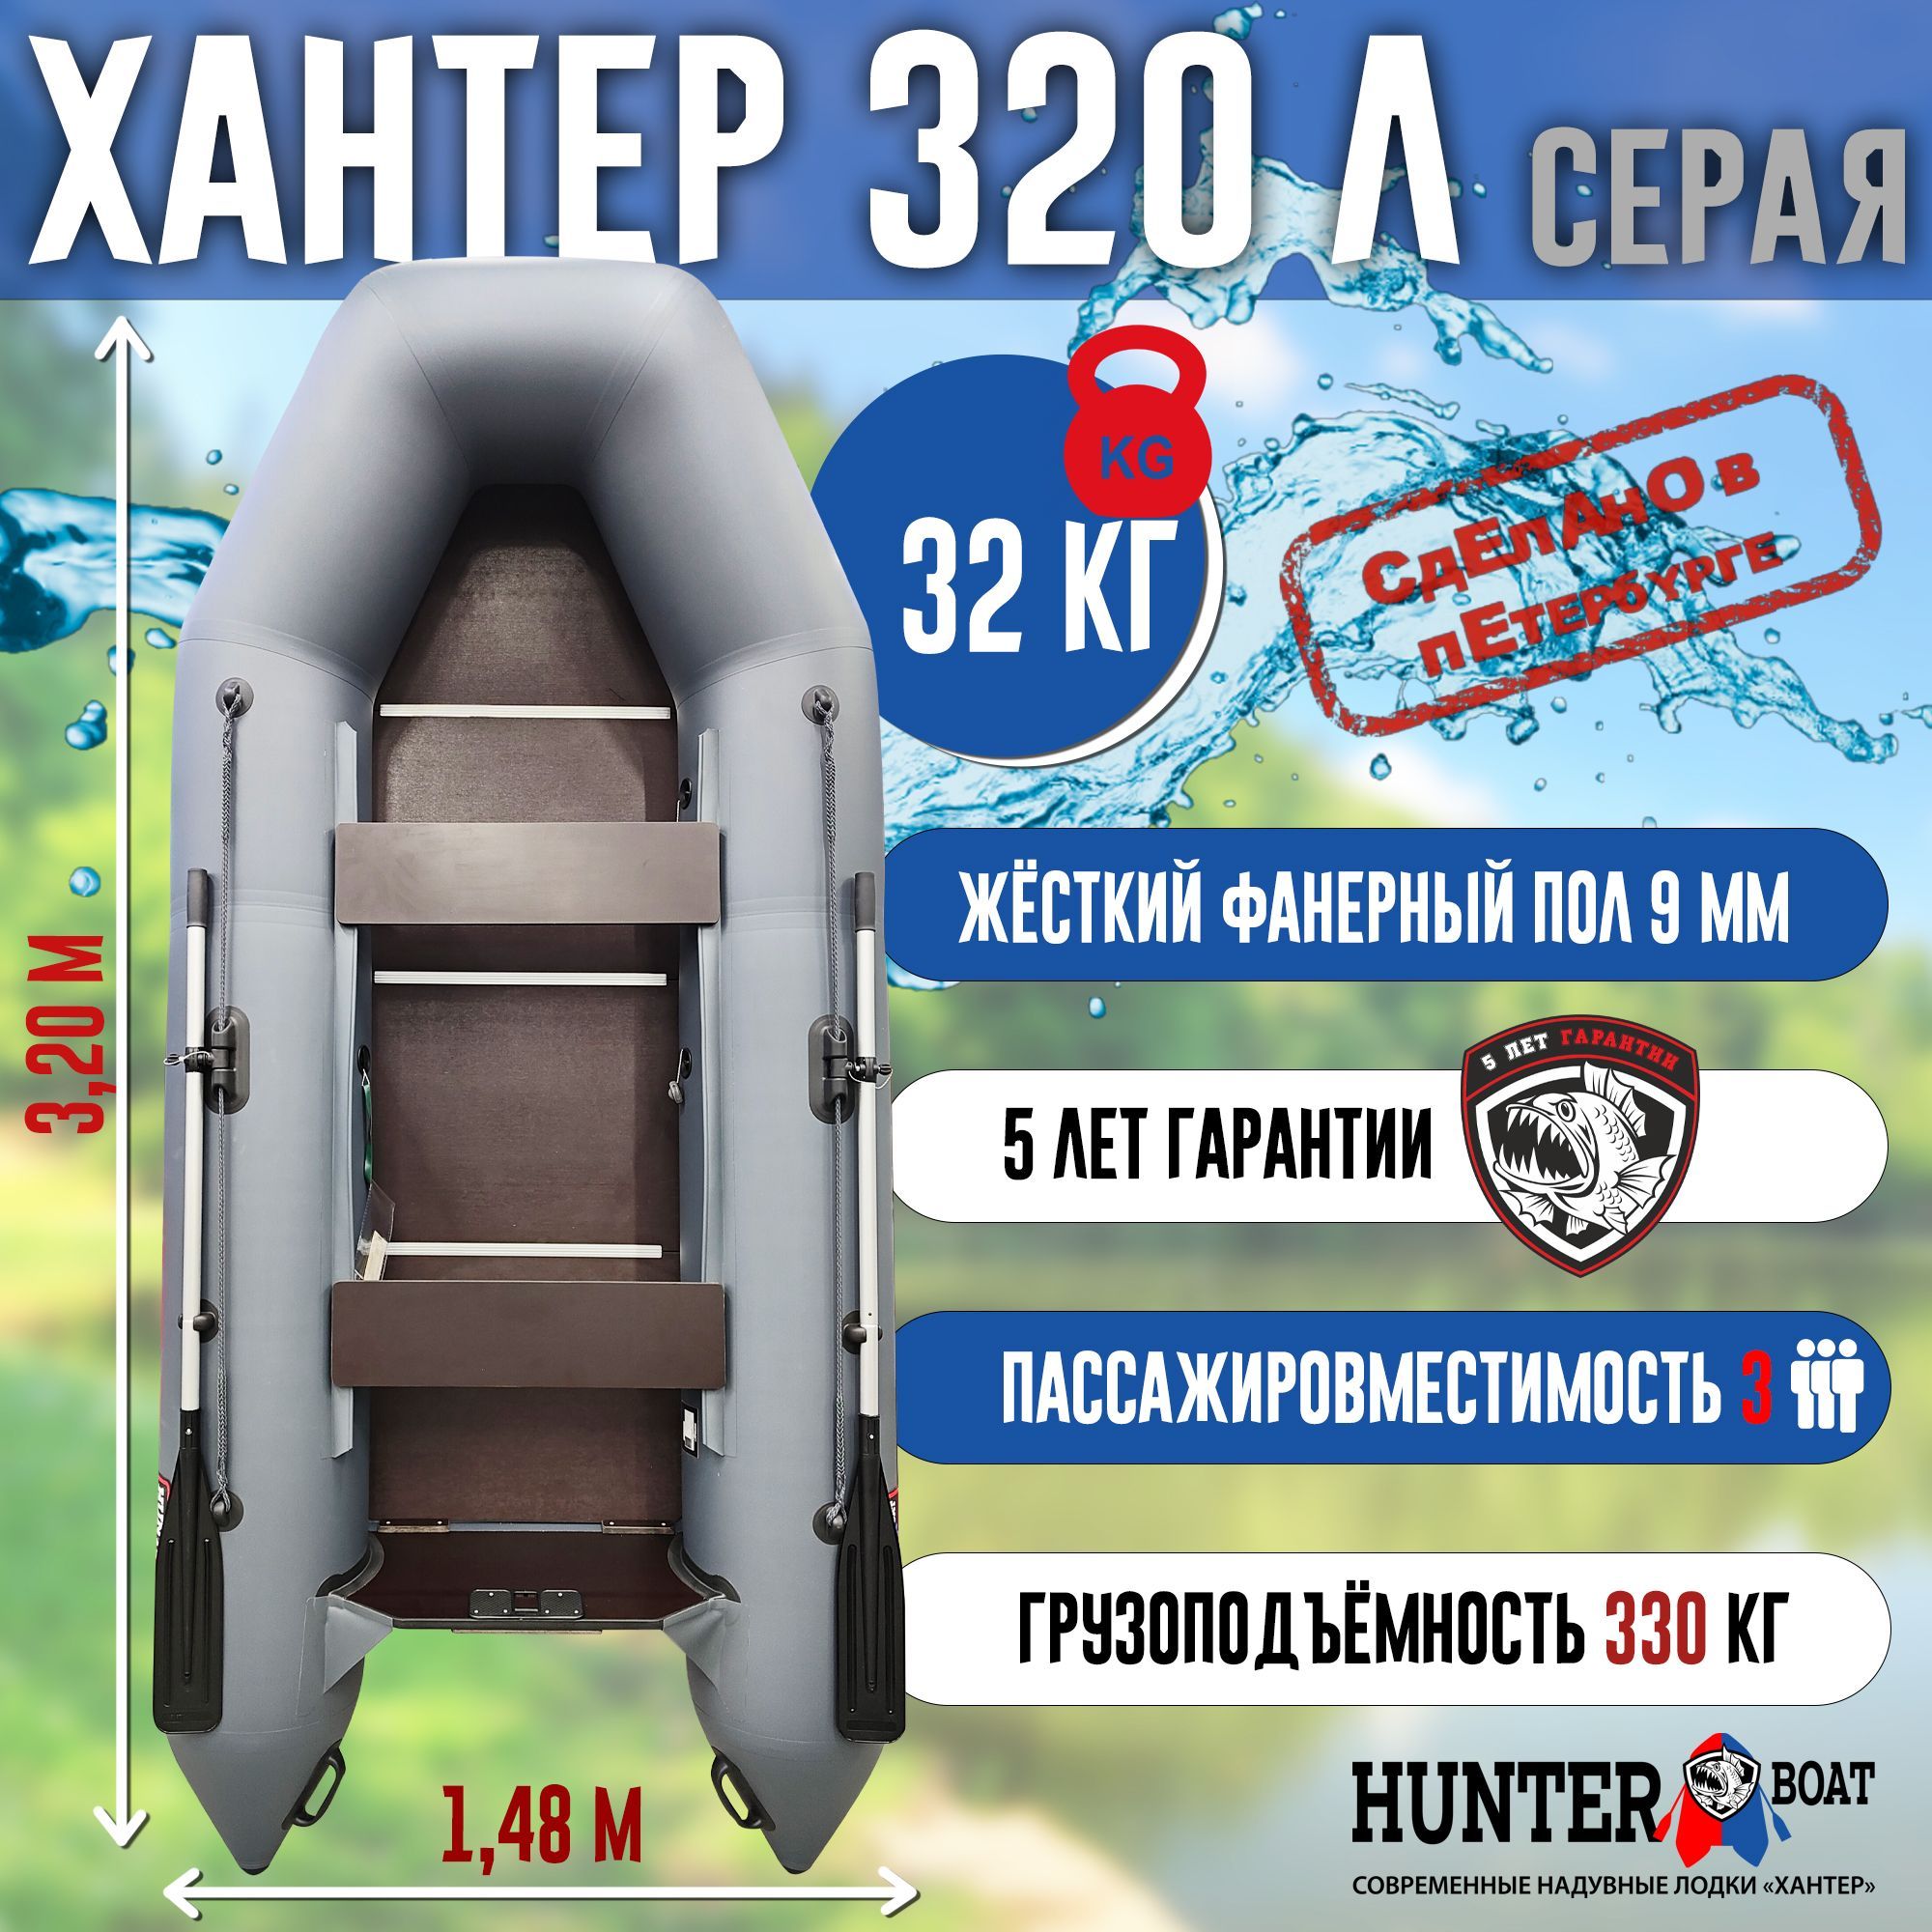 HunterboatЛодка,320см,